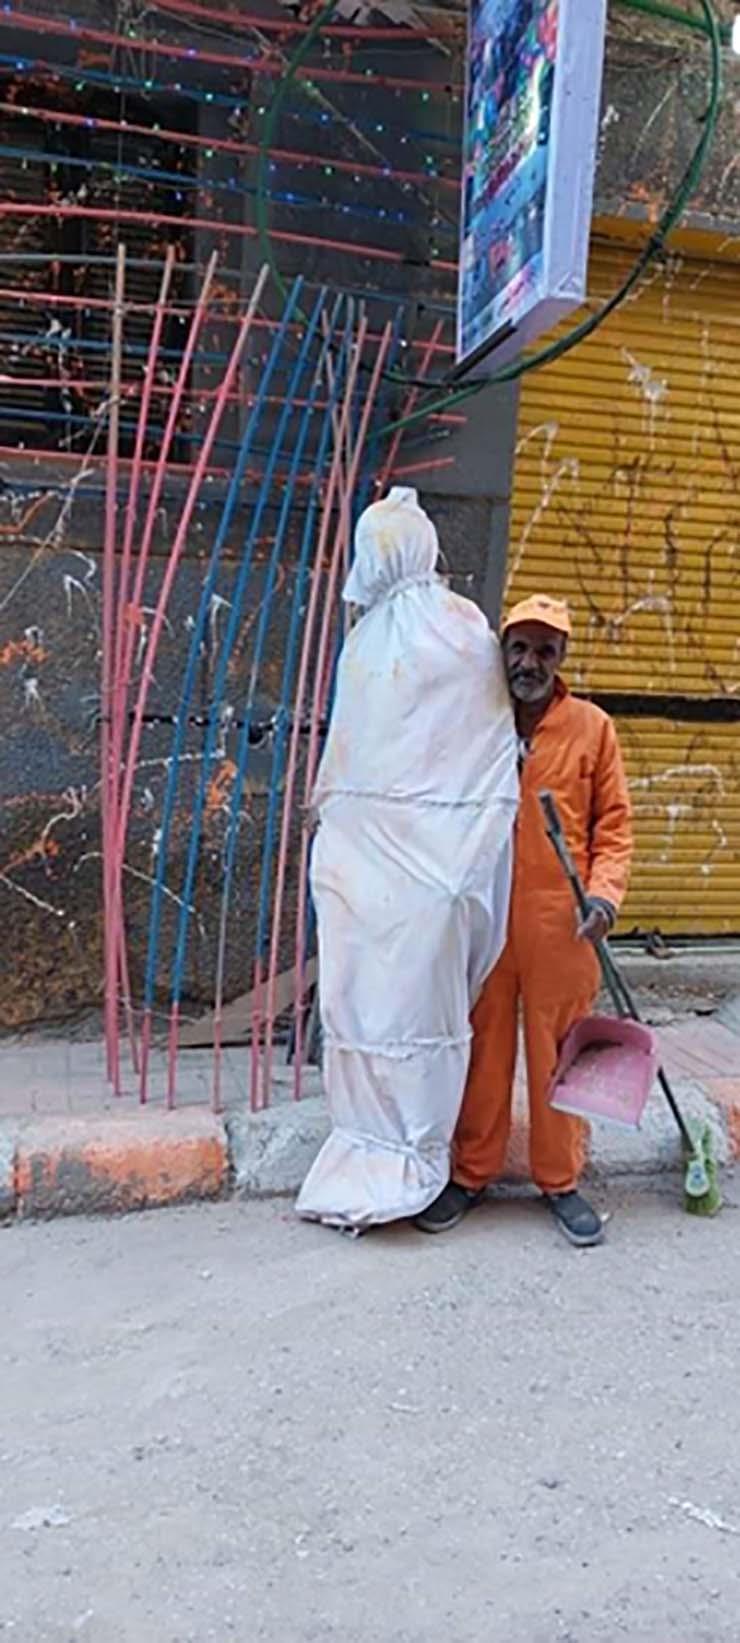 مجسم مشنوق يرتدي الكفن في الشارع